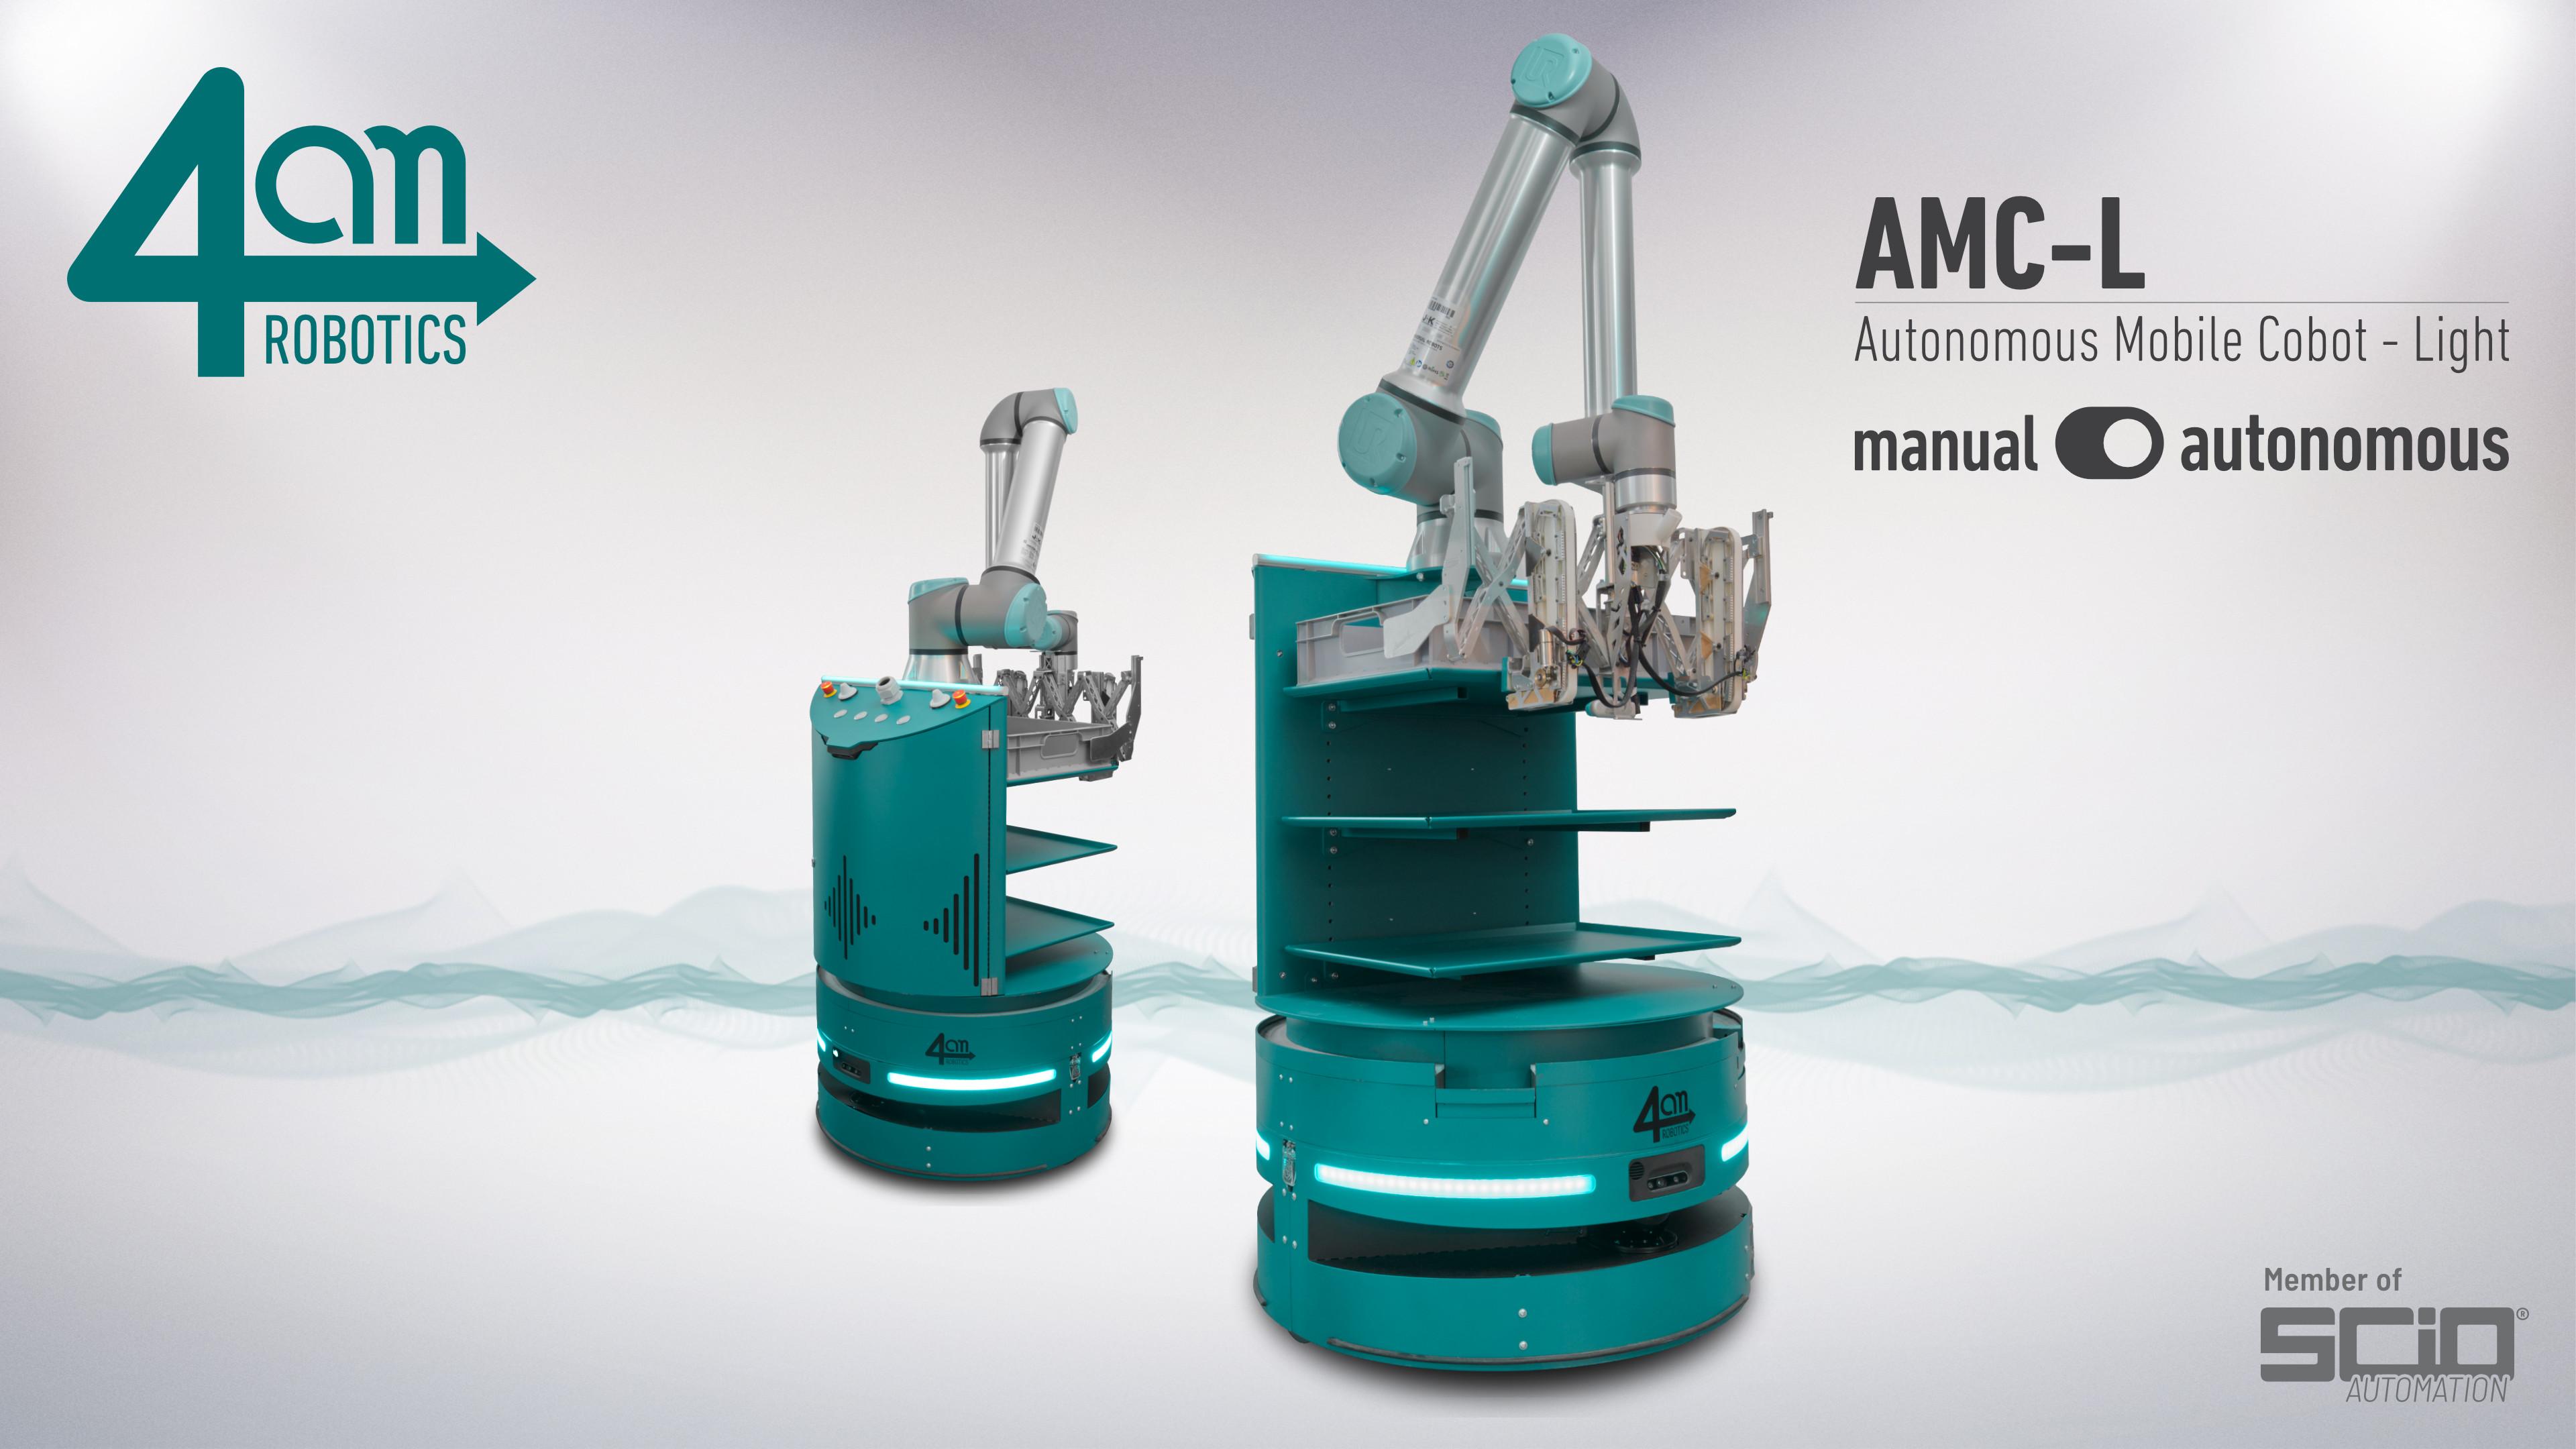 Product AMC-L - Autonomous Mobile Cobot Light | 4am Robotics image